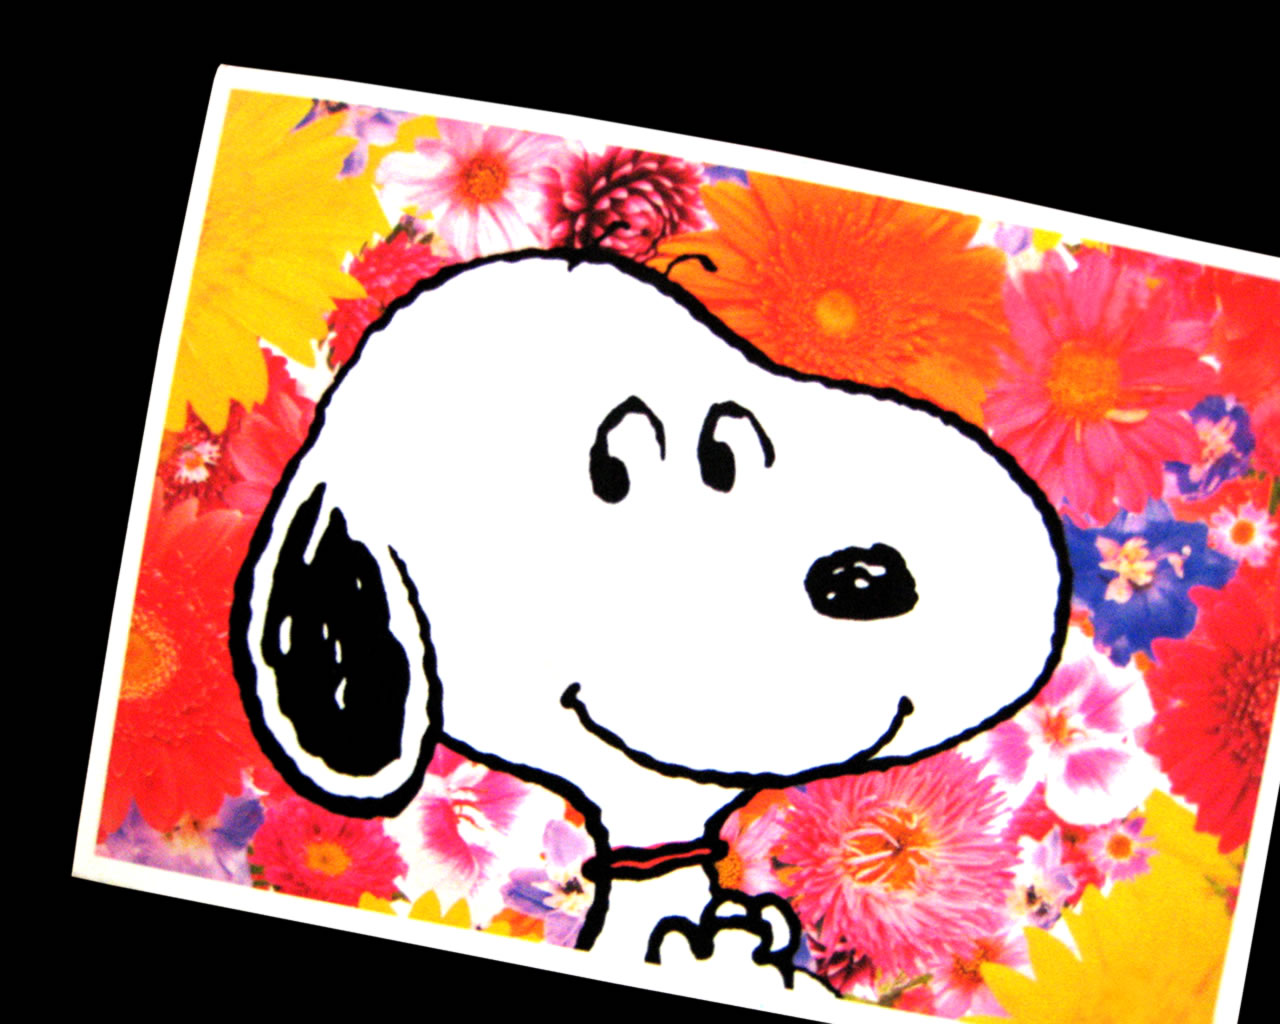 download wallpaper: groeten van Snoopy wallpaper